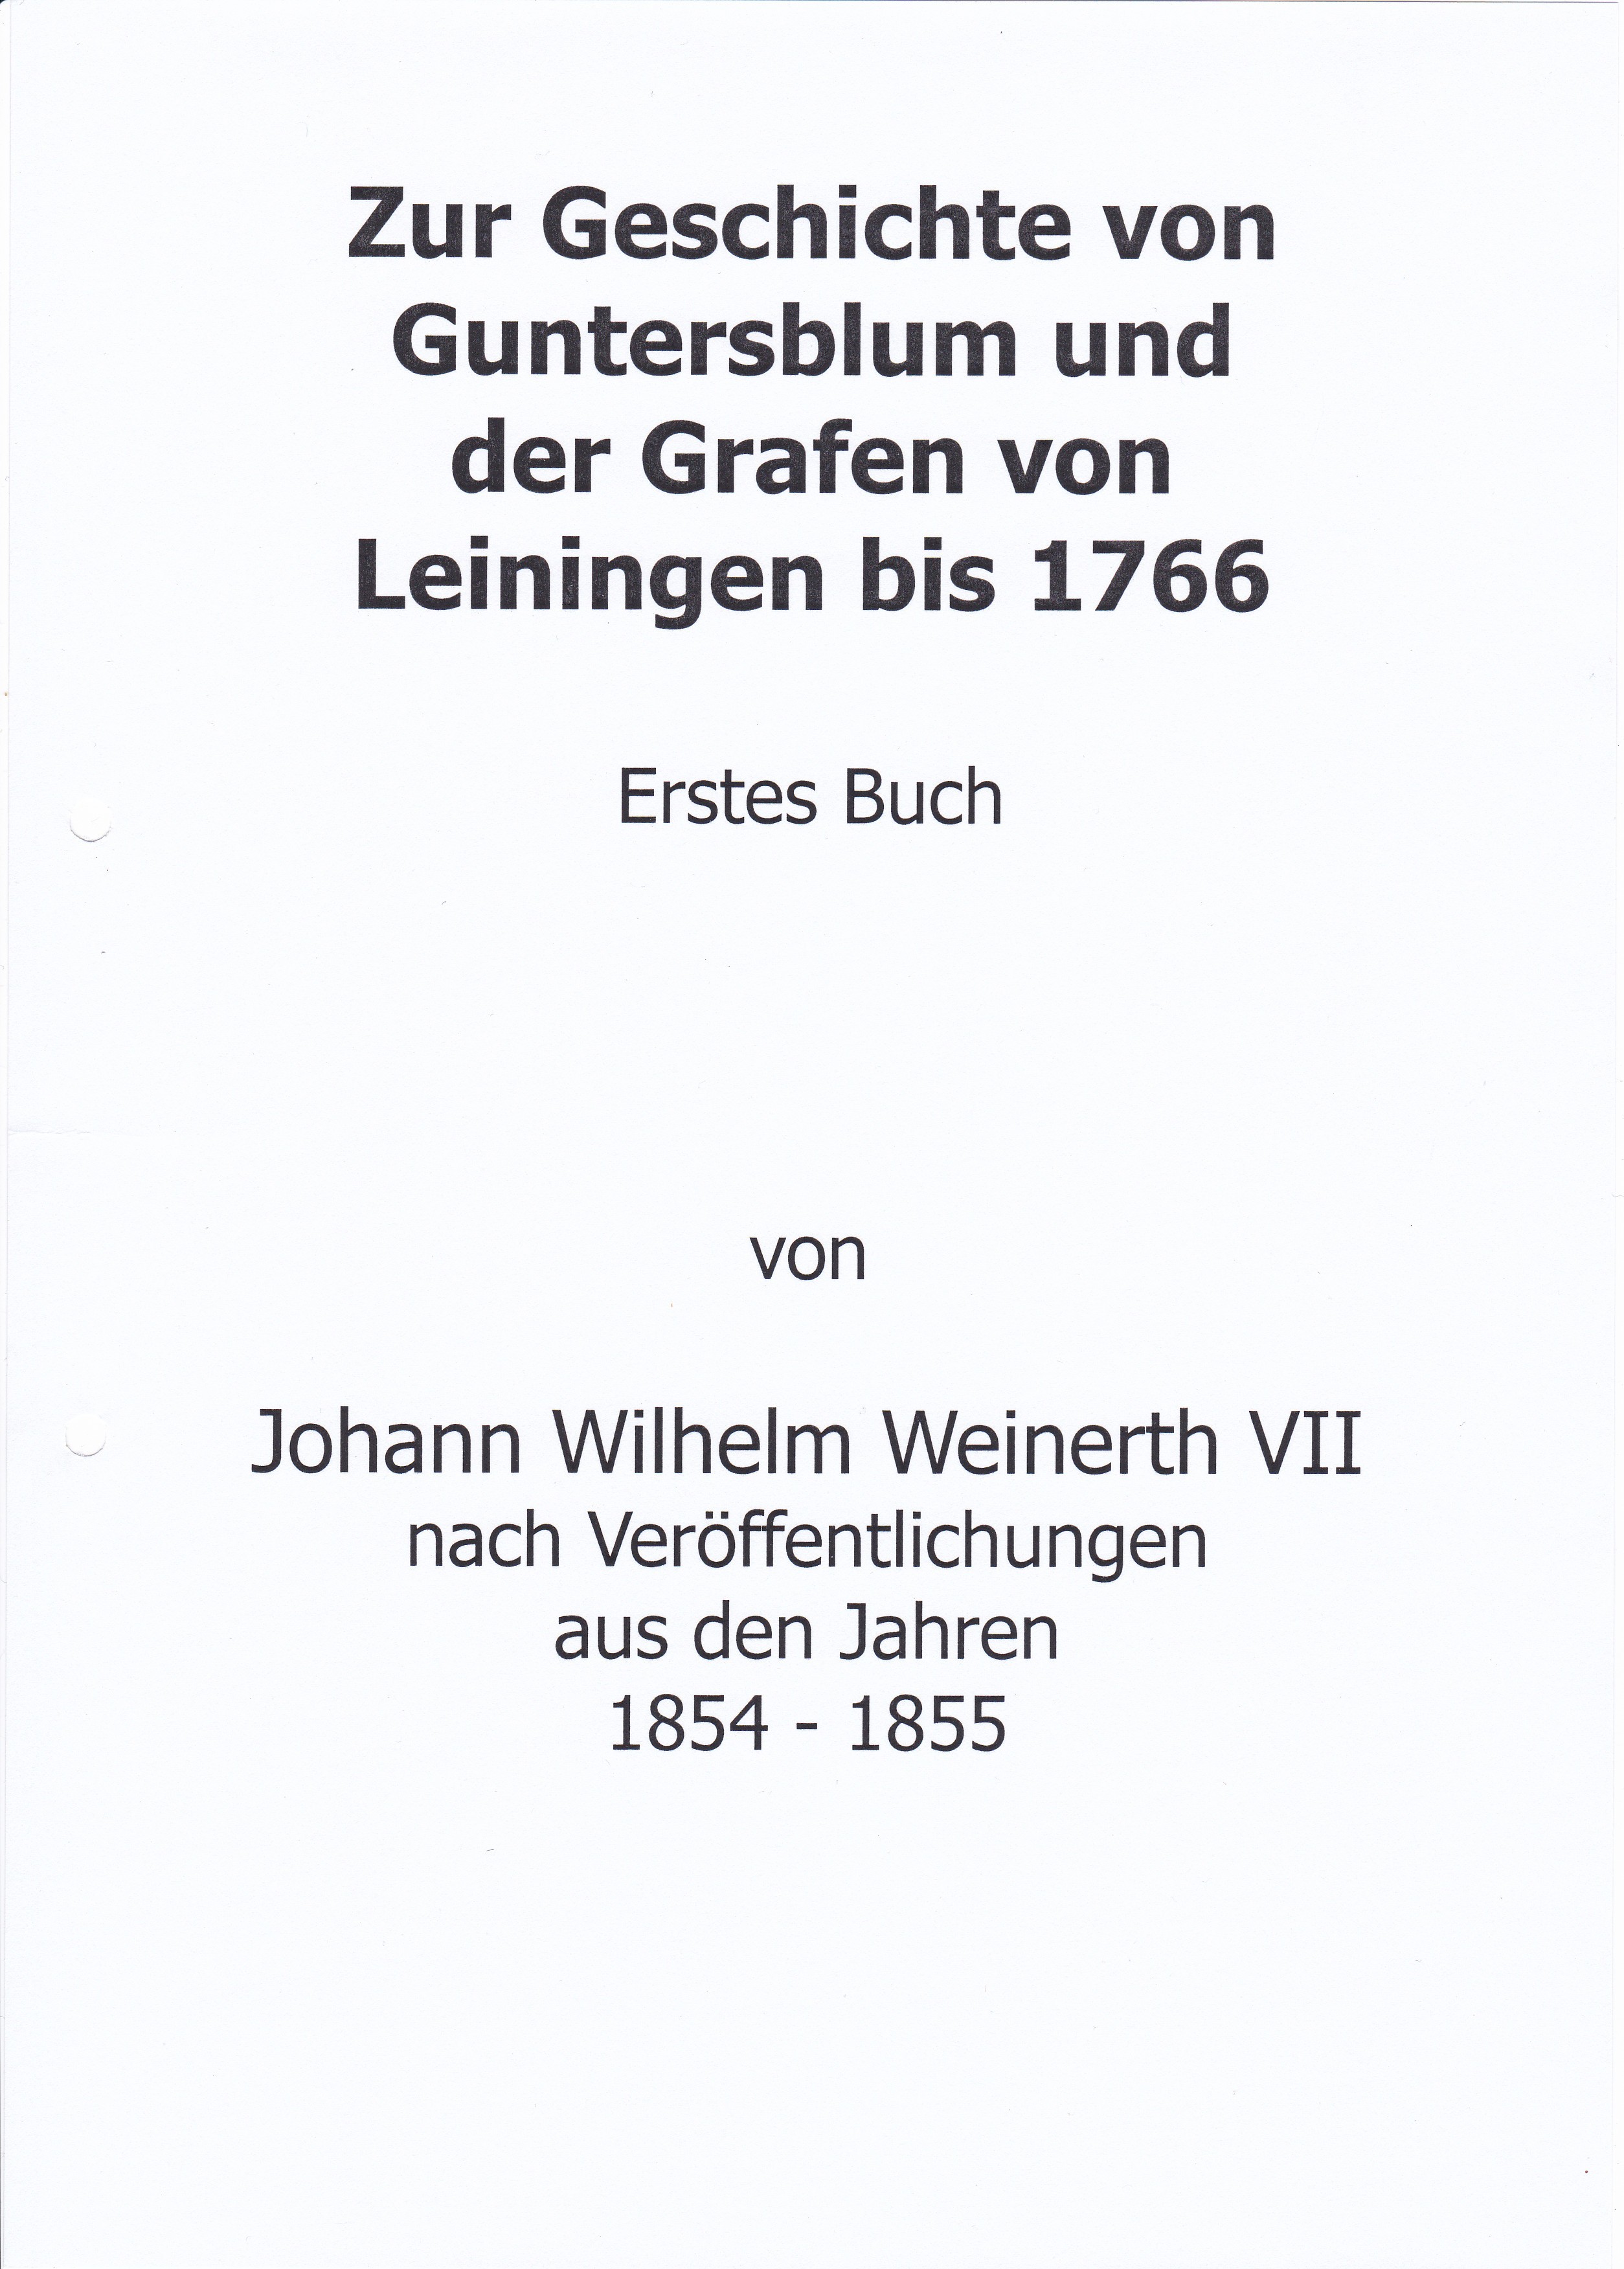 Zur Geschichte von Guntersblum und der Grafen von Leiningen (Museum Guntersblum  im Kellerweg 20 CC BY-NC-SA)